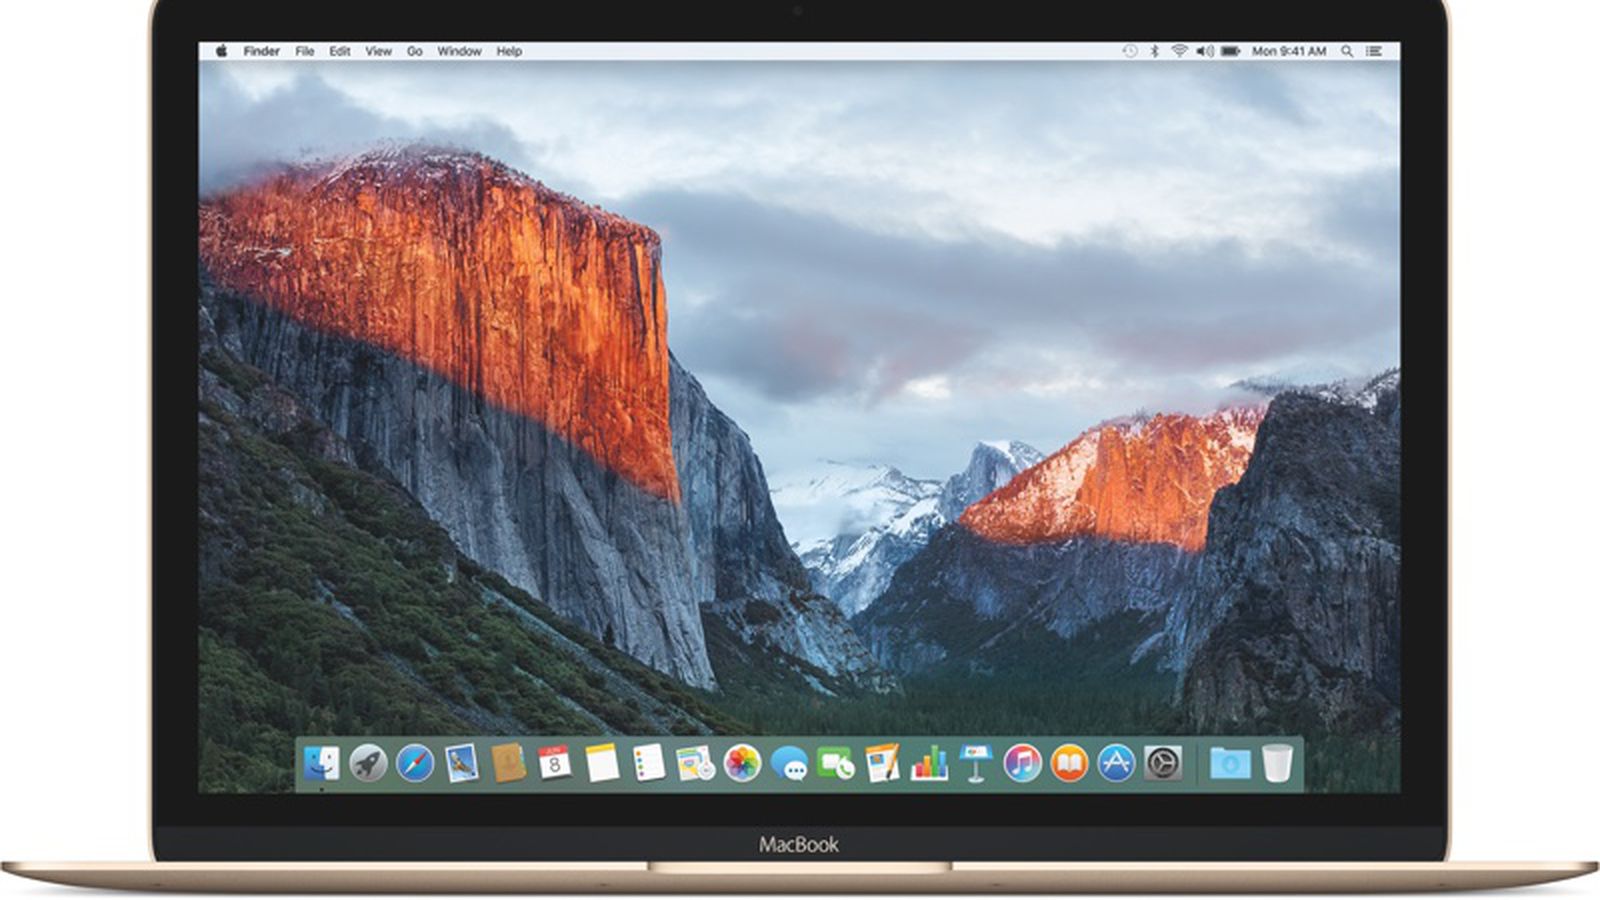 OS X El Capitan: Details, Hidden Features, and Performance Improvements